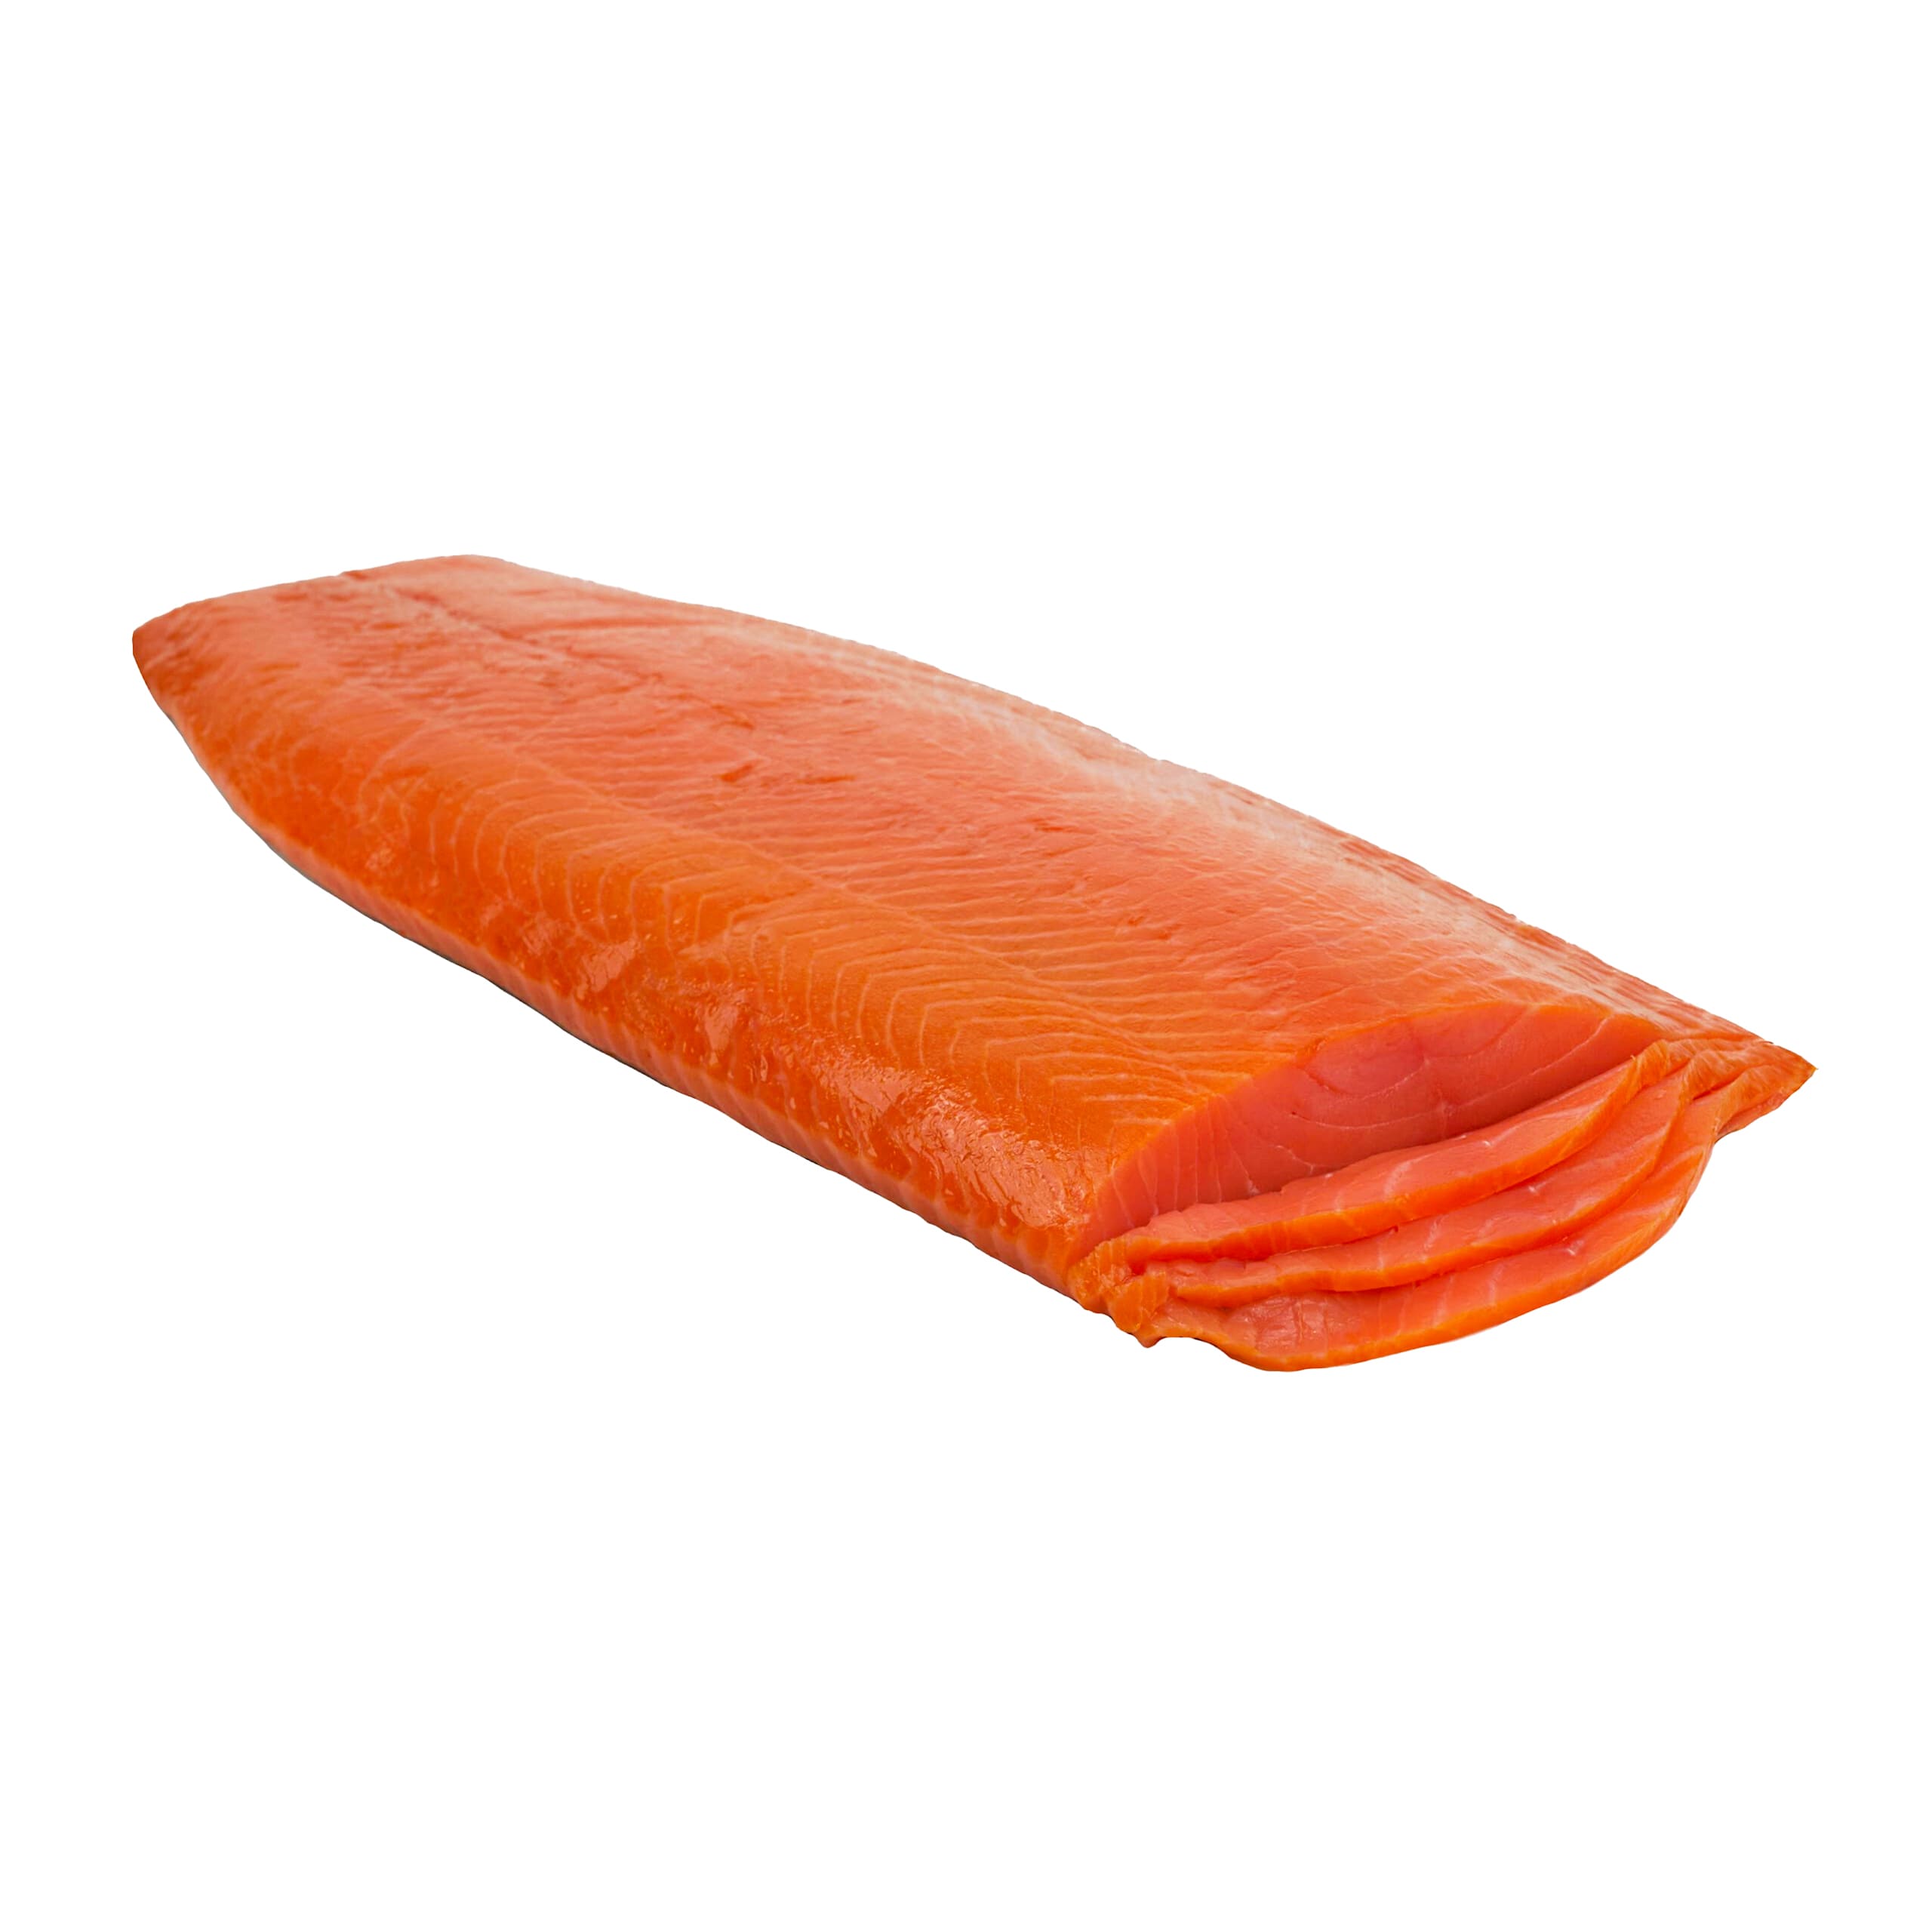 Cold Smoked King Salmon